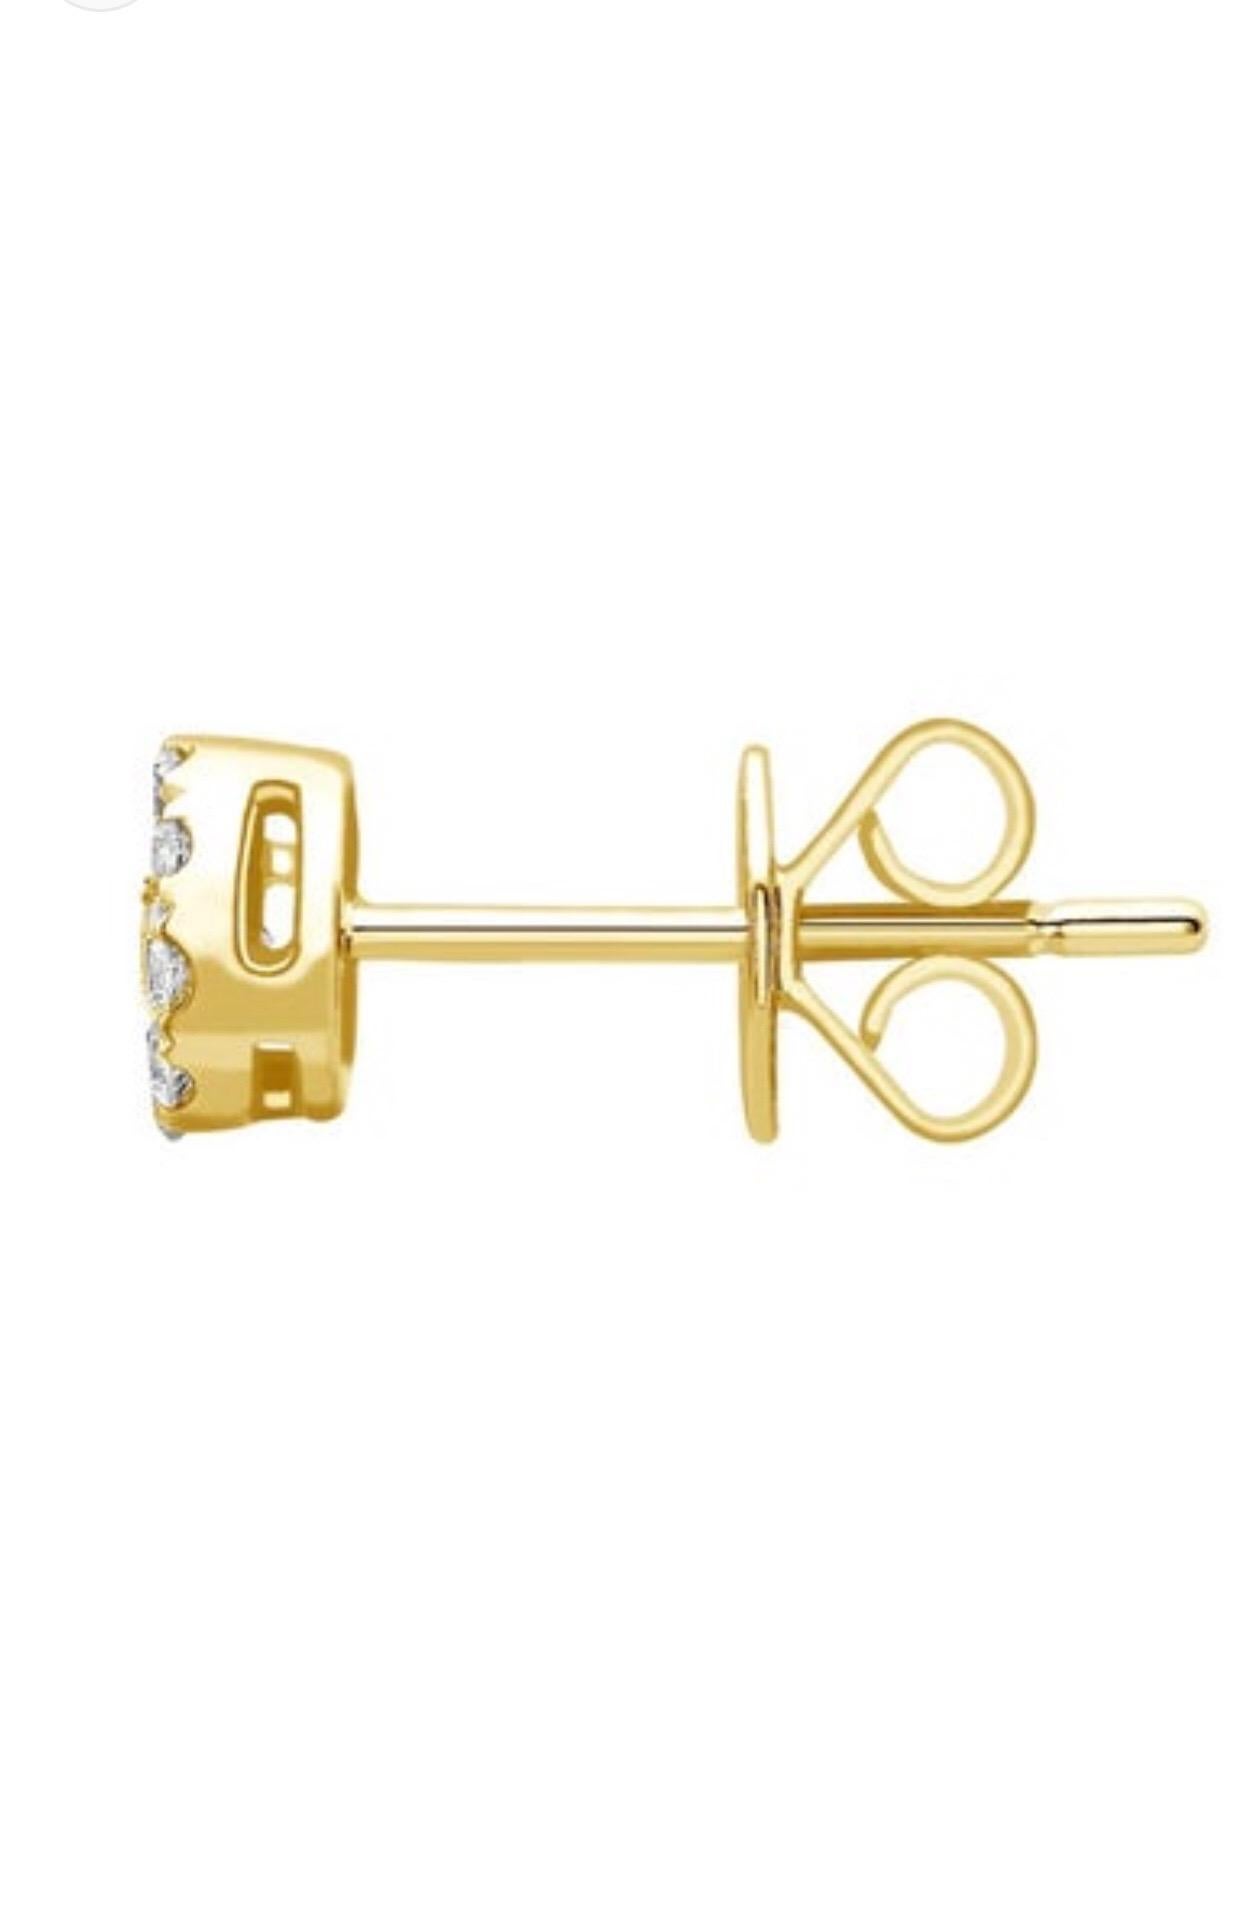 Diese eleganten Ohrstecker mit runden Brillanten und H-SI-Diamanten sind in 18 Karat Gelbgold gefasst. Diese Mini-Cluster-Ohrstecker haben ein Gesamtgewicht von 0,25 Karat und einen Durchmesser von 4 mm (jeder Ohrstecker). Diese Ohrringe wiegen 1,1